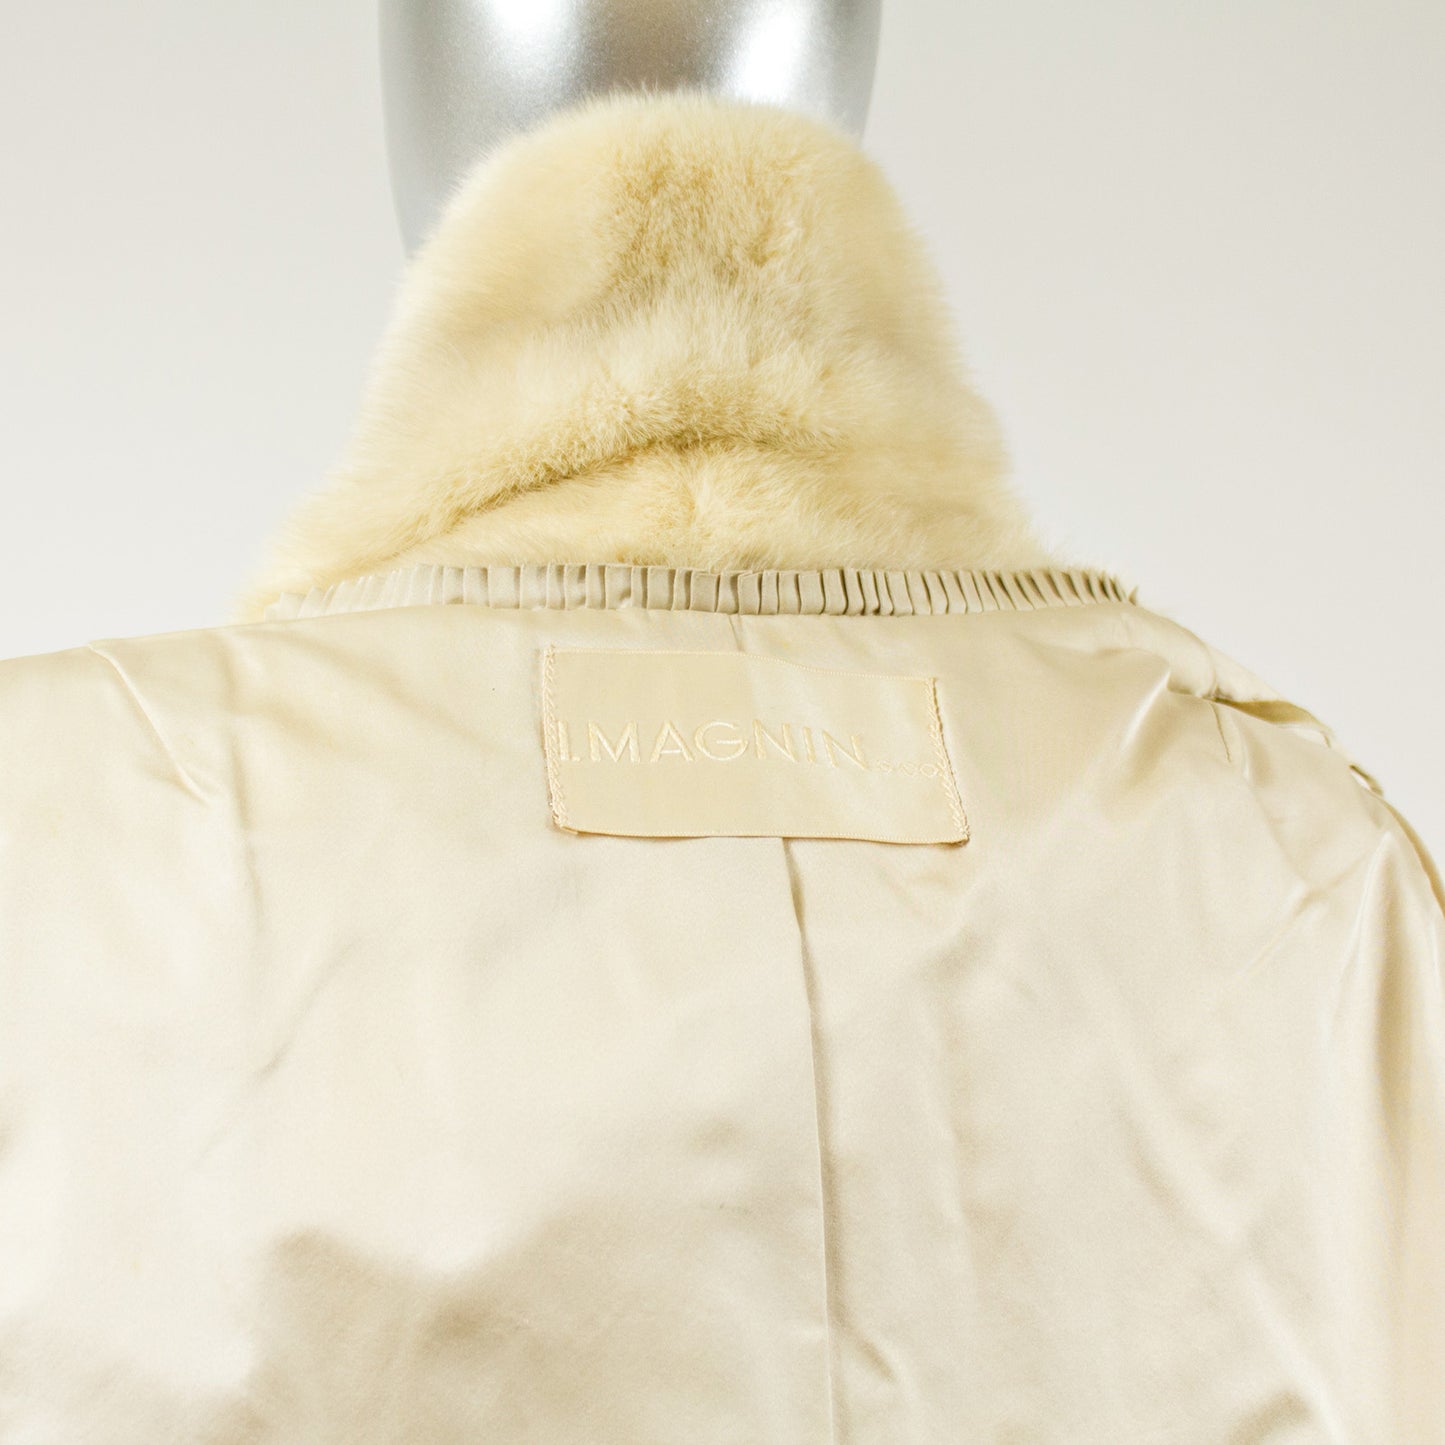 Pearl Mink Fur Jacket - Size S